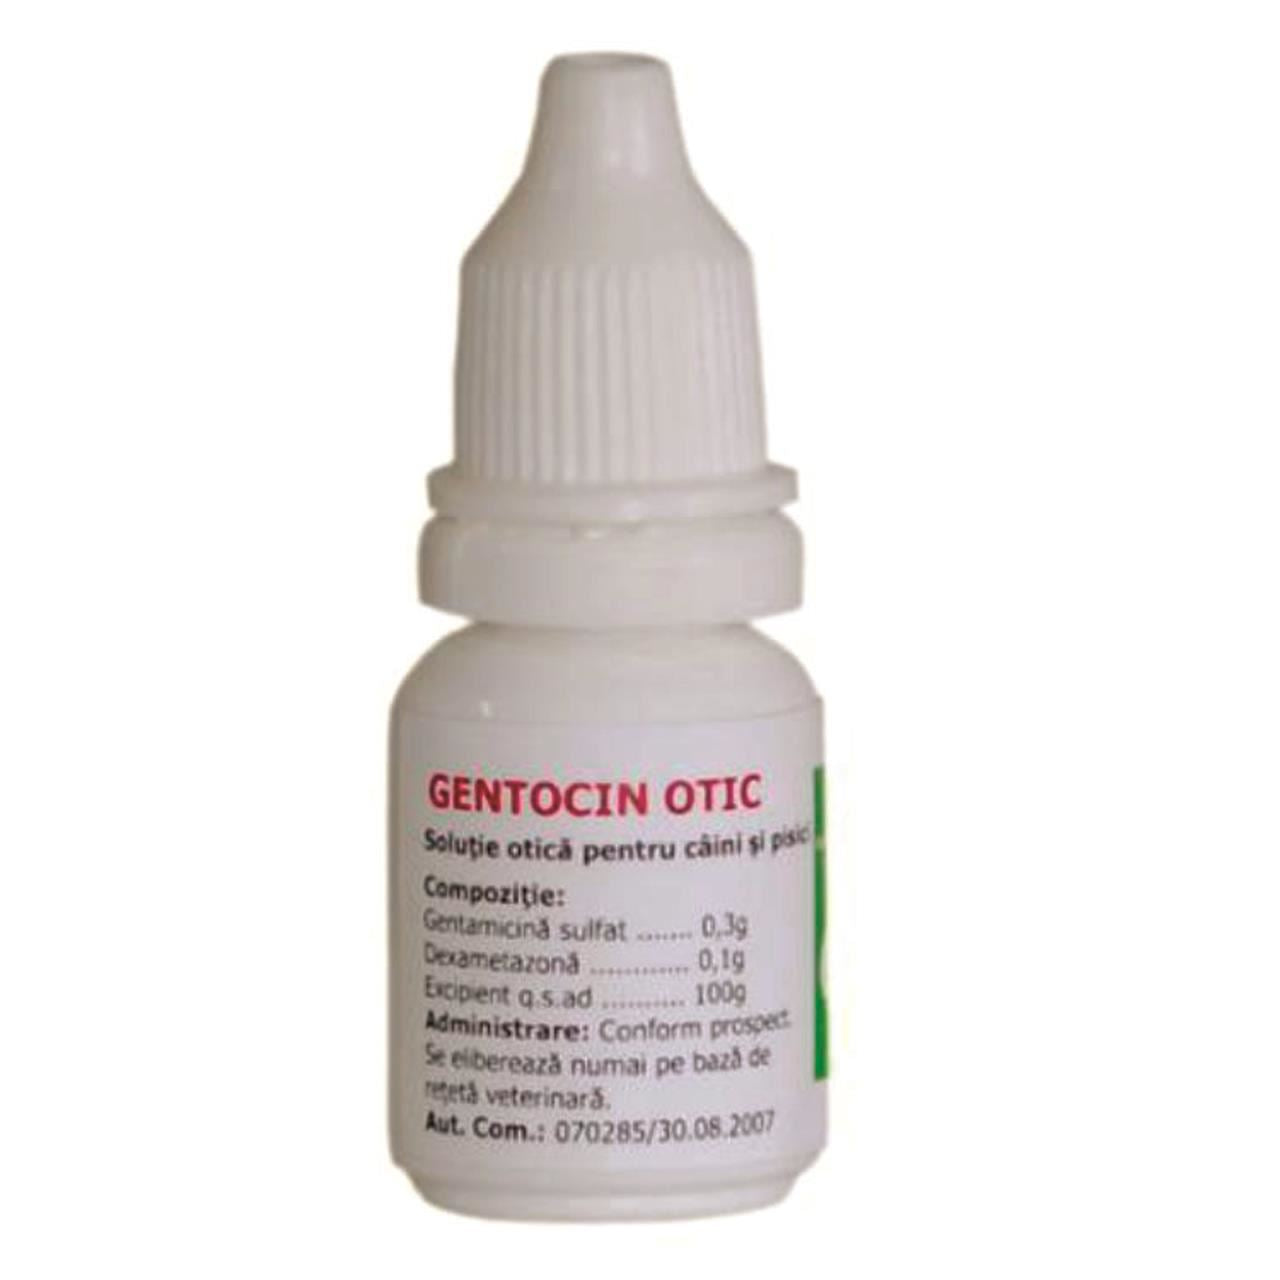 Gentocin otic - ALTVET - Farmacie veterinara - Pet Shop - Cosmetica